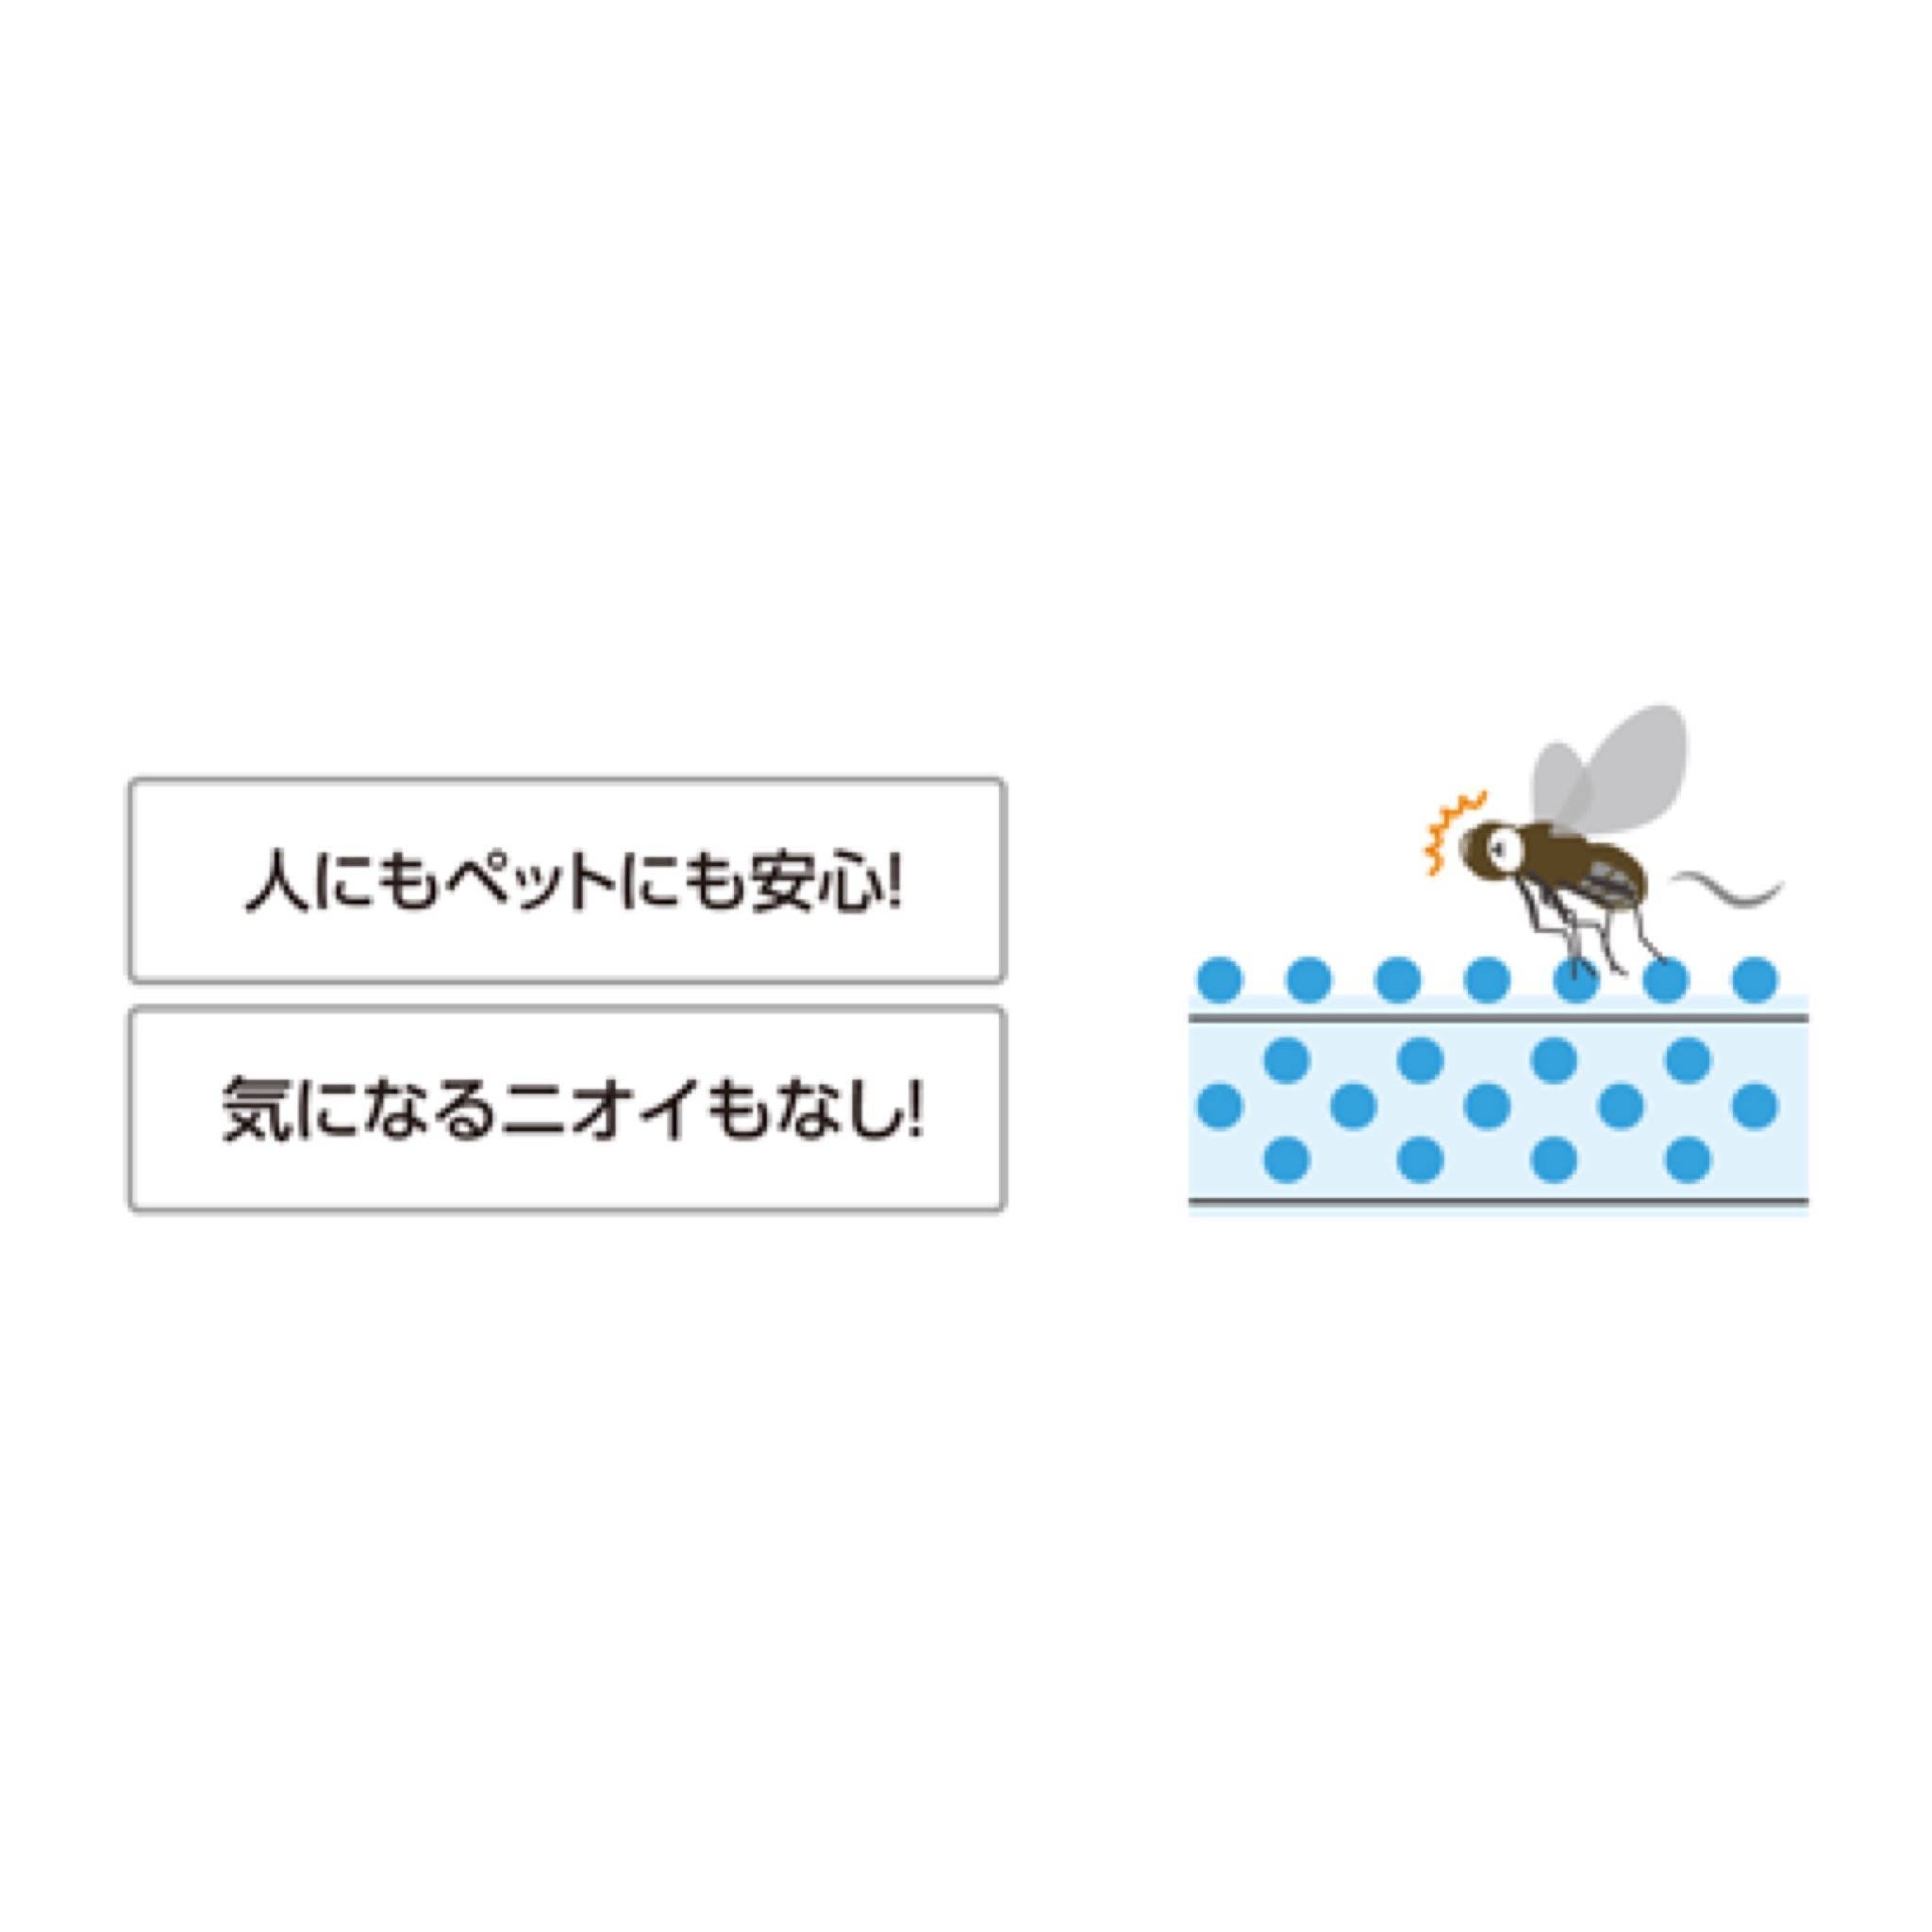 4月なのに蚊に刺されてます😅 MITSUWA 西尾のブログ 写真2